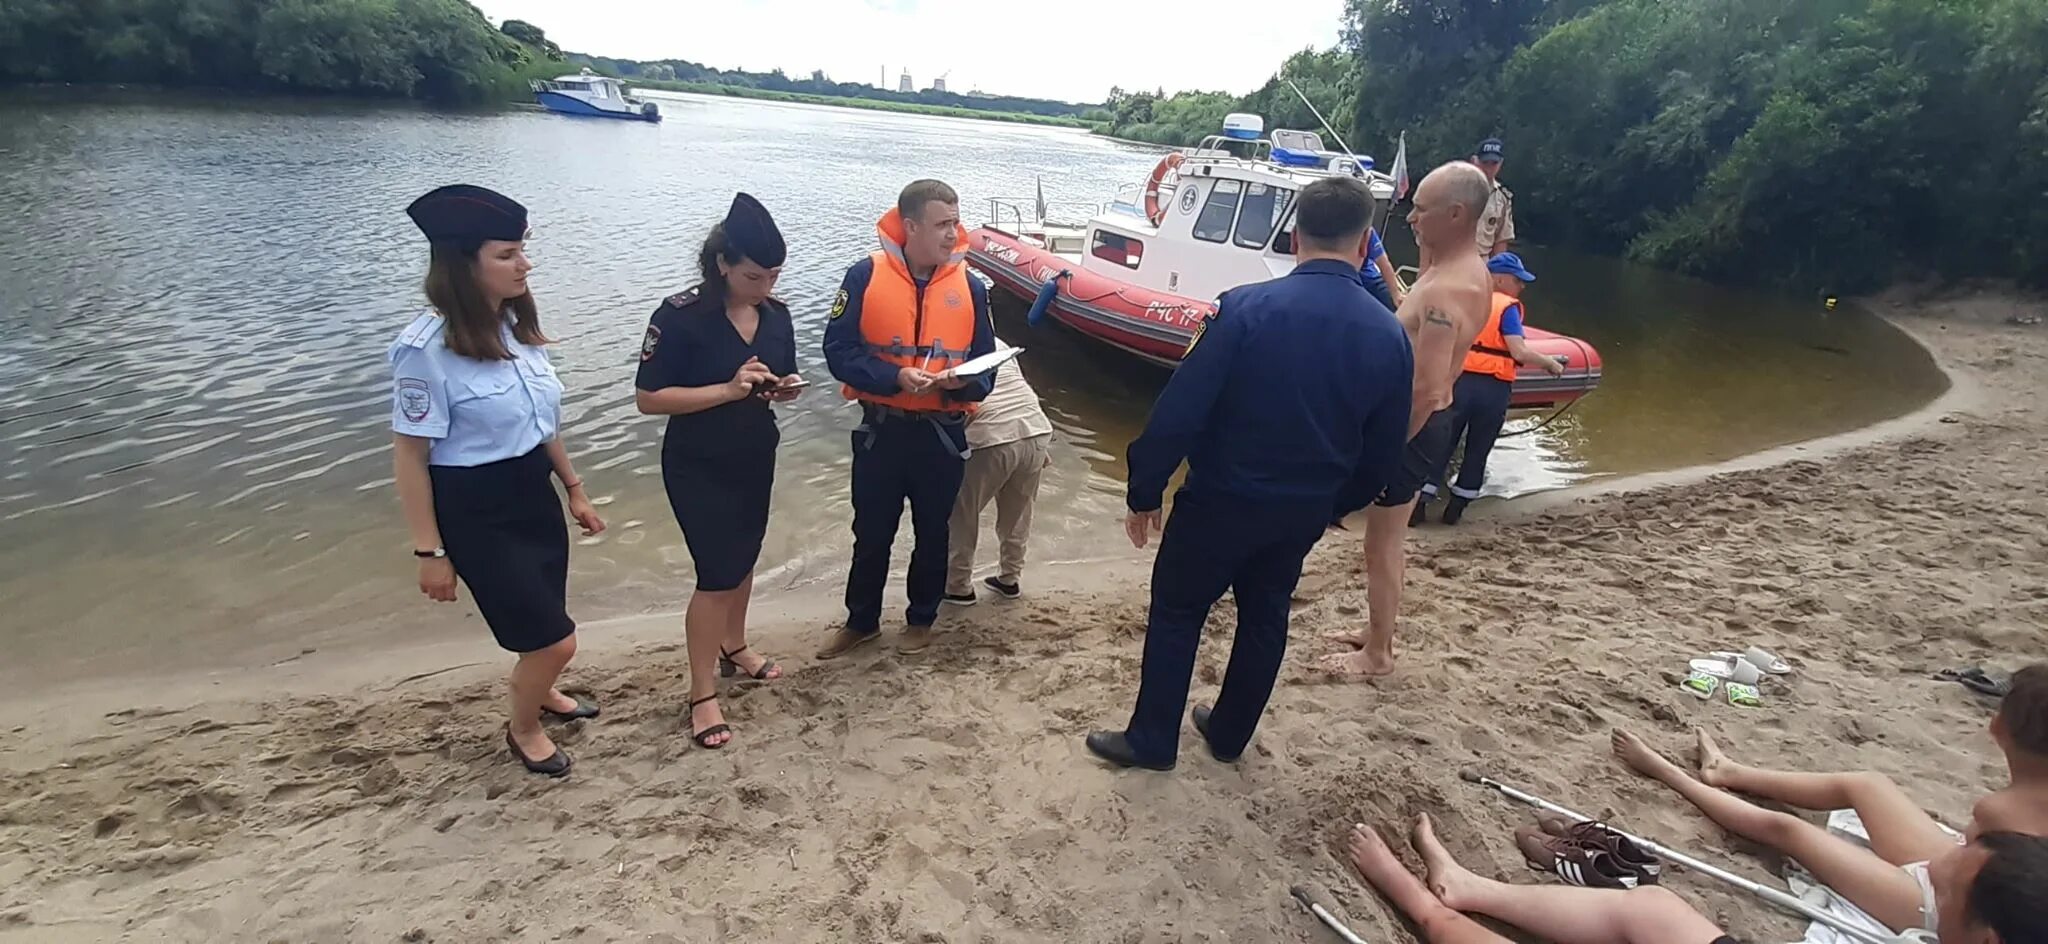 Где купаться в калининграде. Калининградские спасатели на пляжах. Людей штрафуют за купание. Калининград купание. Спасатель и полиция на пляже.